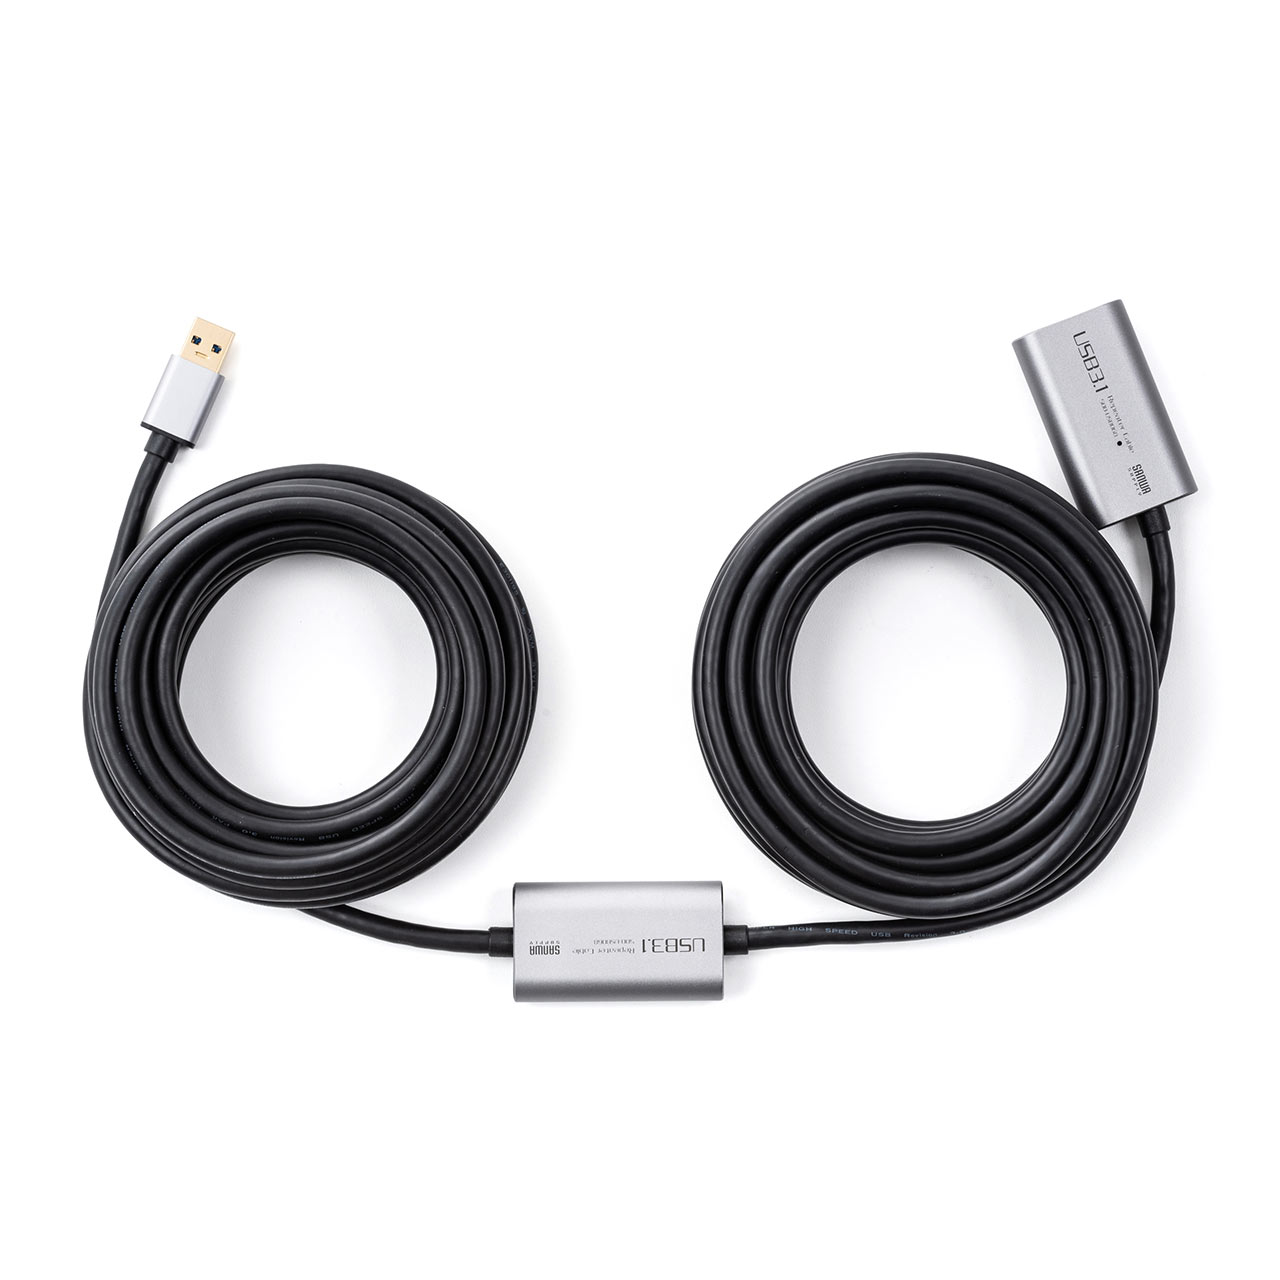 USBP[u 10m USB 3.2 Gen1 ACA_v^ ANeBus[^[P[u 500-USB068